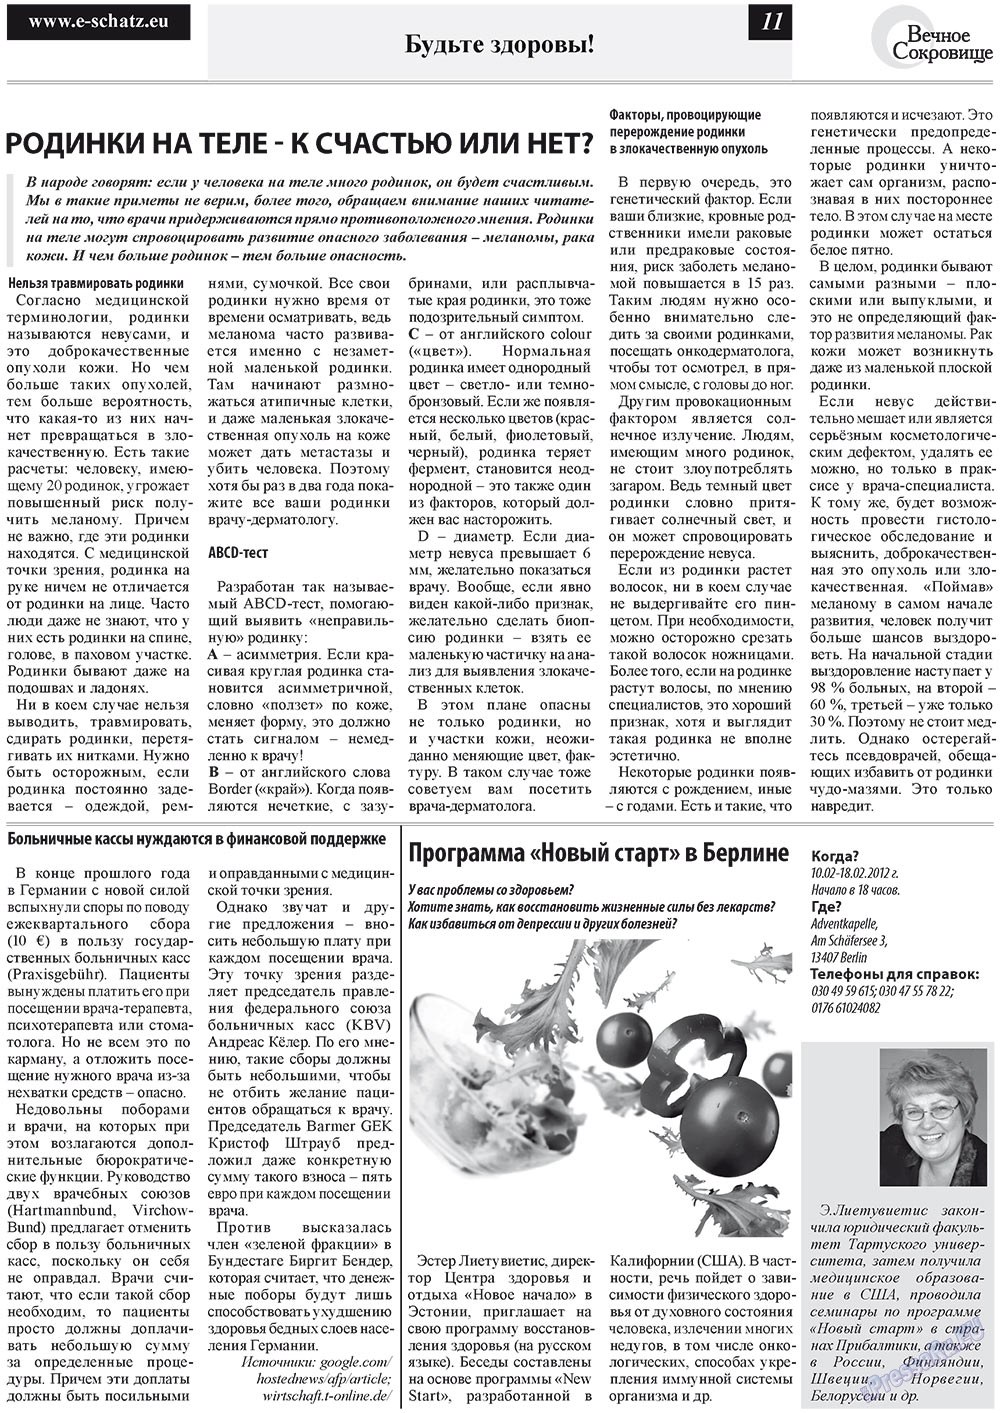 Вечное сокровище (газета). 2012 год, номер 1, стр. 11